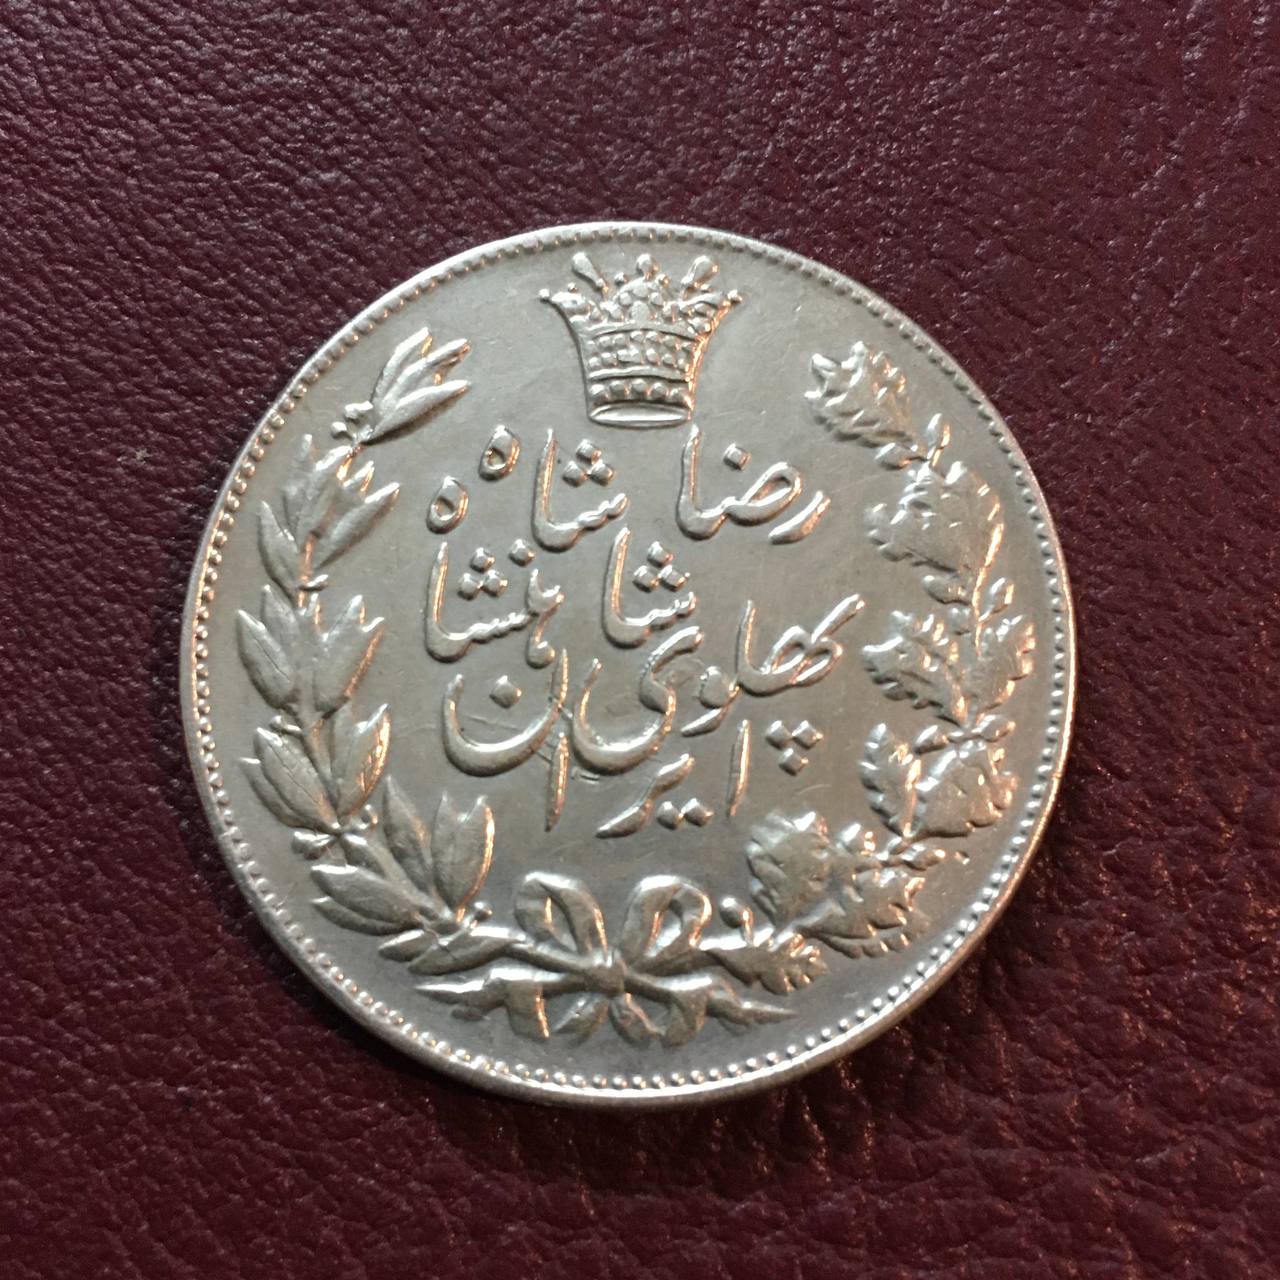 سکه نقره ۵٠٠٠ دیناری خطی یا عنوان ١٣٠۵ رضا شاه در حد بانکی و عالی کمیاب و ارزشمند